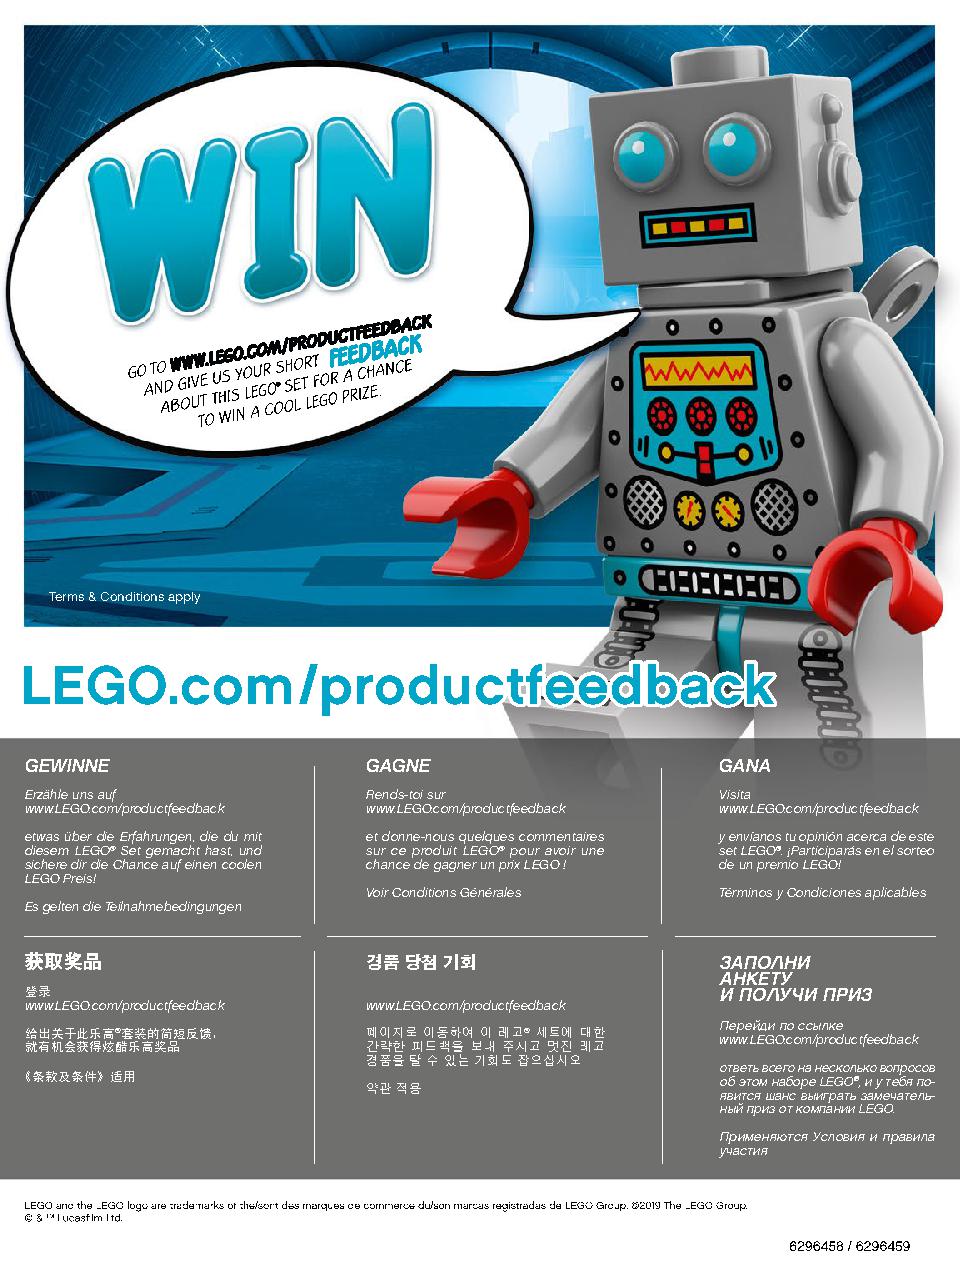 스타워즈 카일로 렌의 셔틀™ 75256 레고 세트 제품정보 레고 조립설명서 184 page